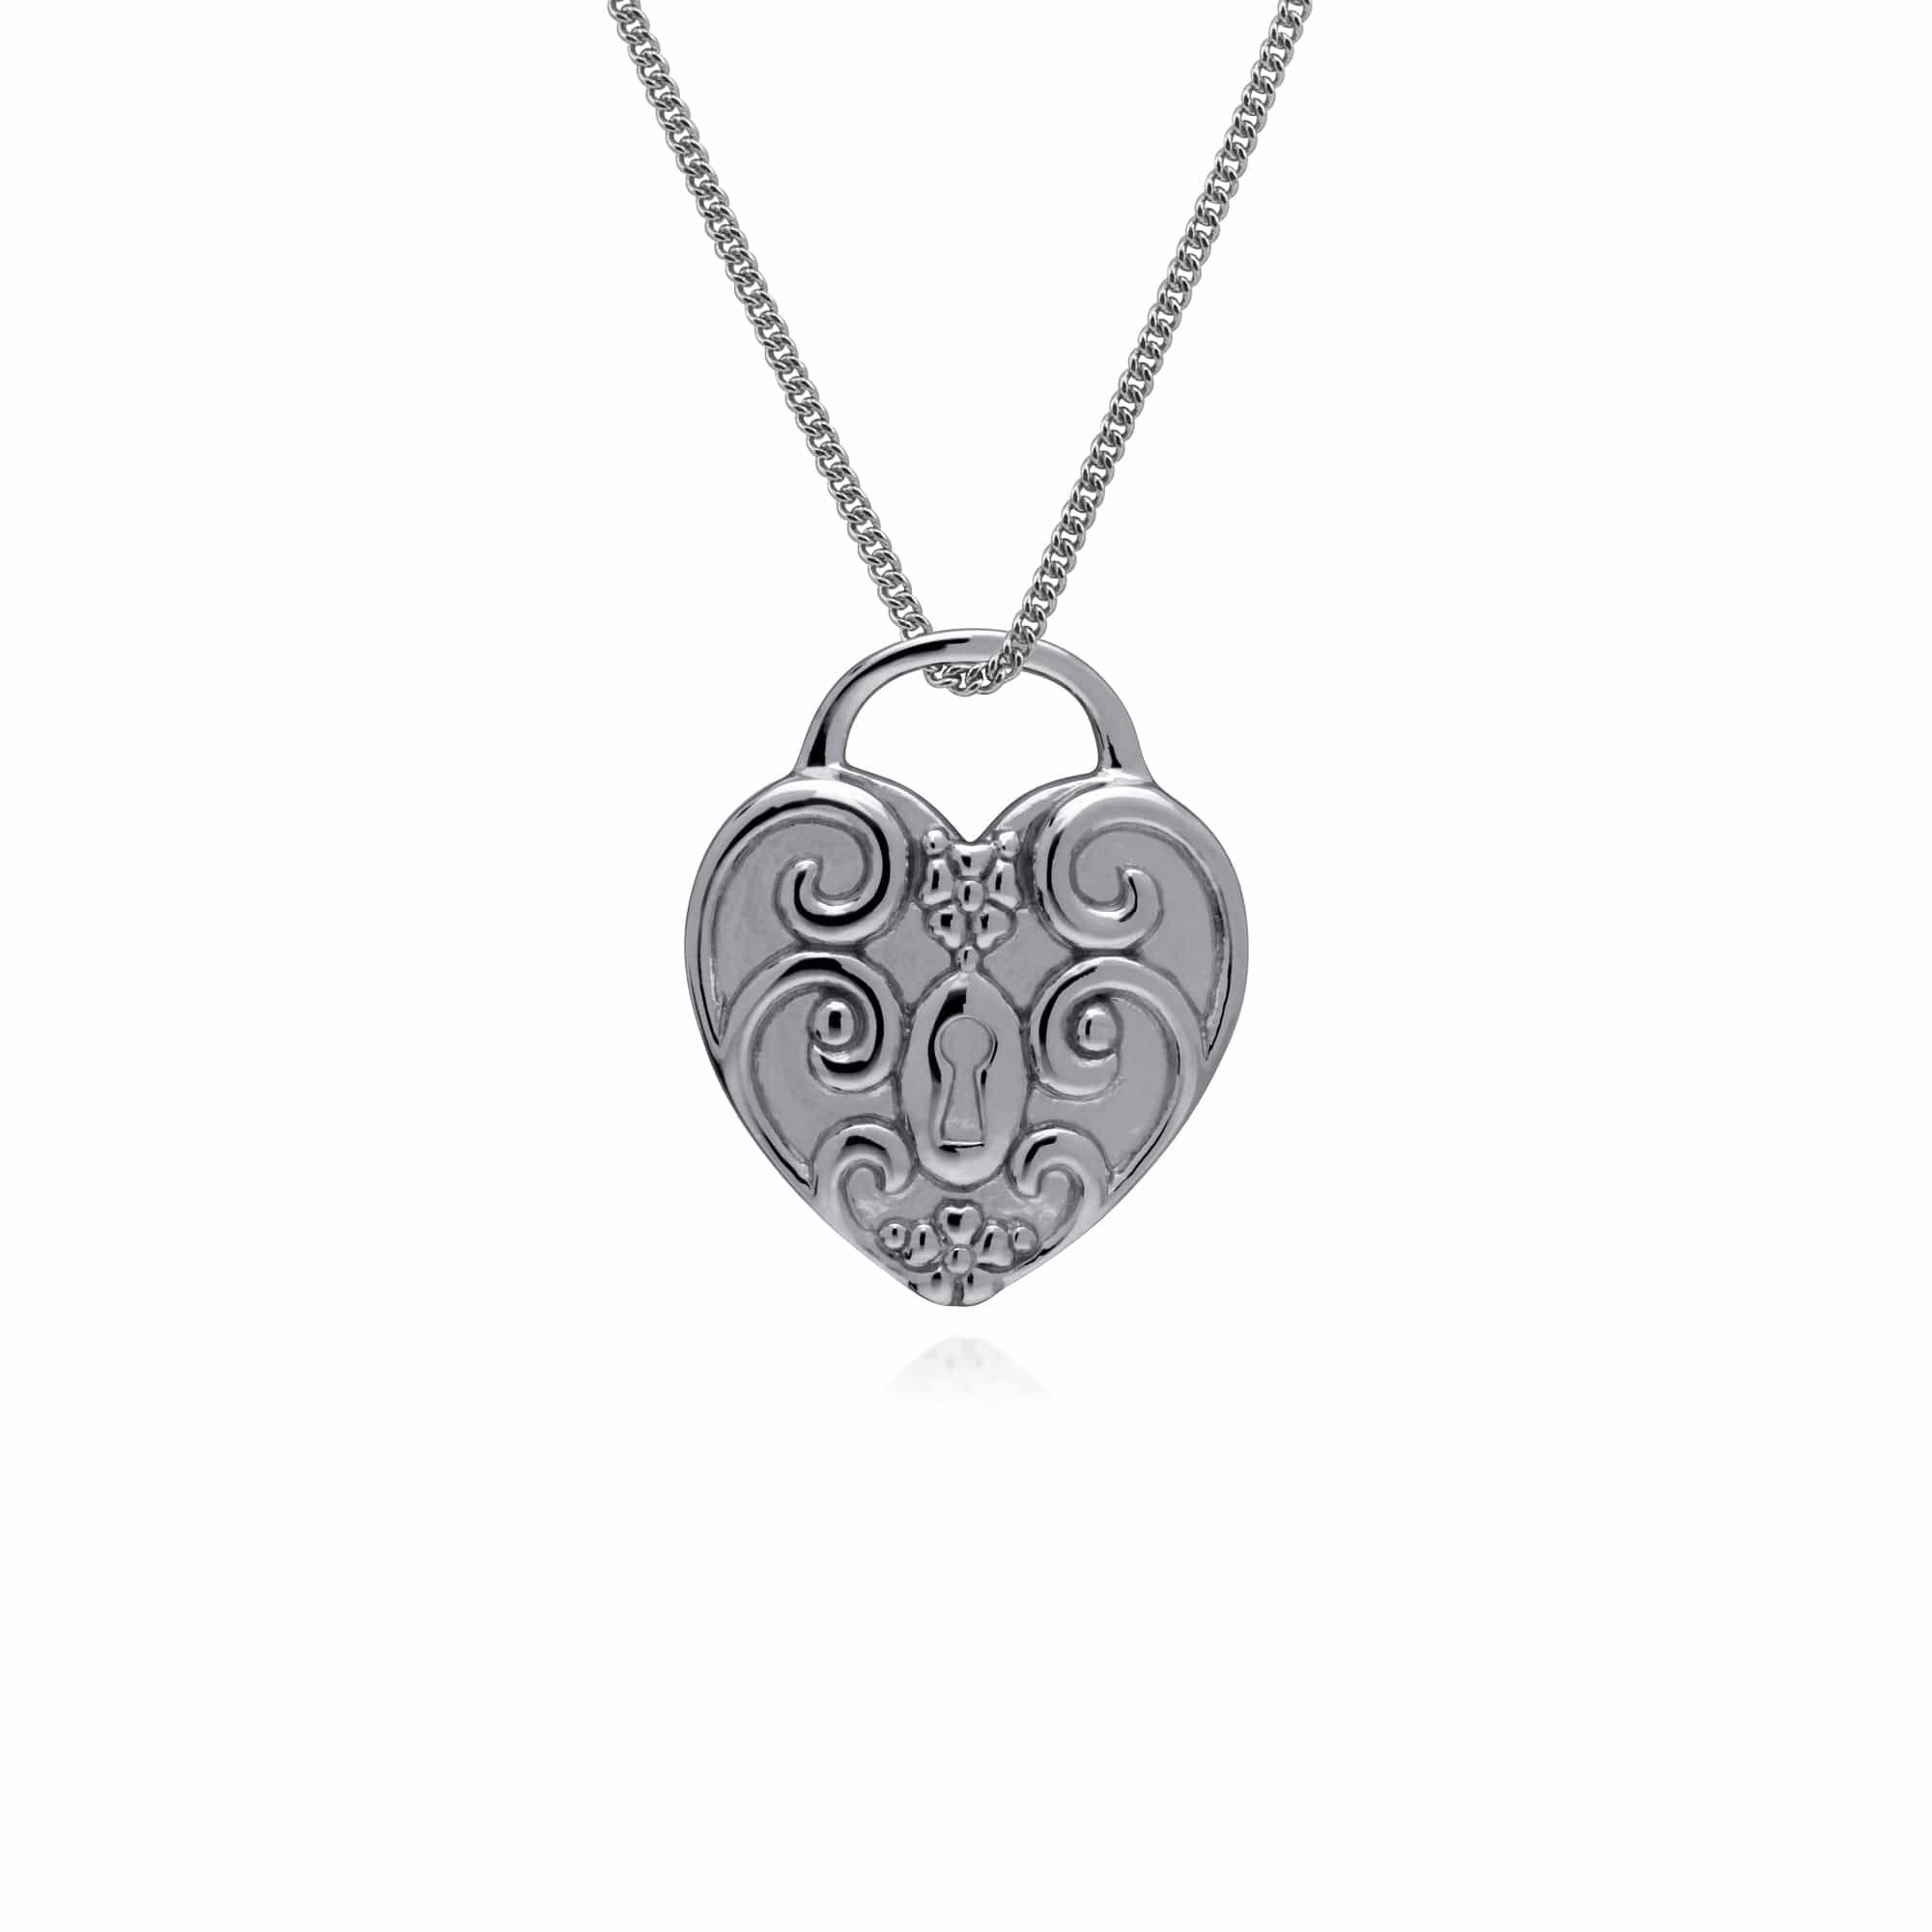 270P026406925-270P026601925 Classic Swirl Heart Lock Pendant & Garnet Key Charm in 925 Sterling Silver 3